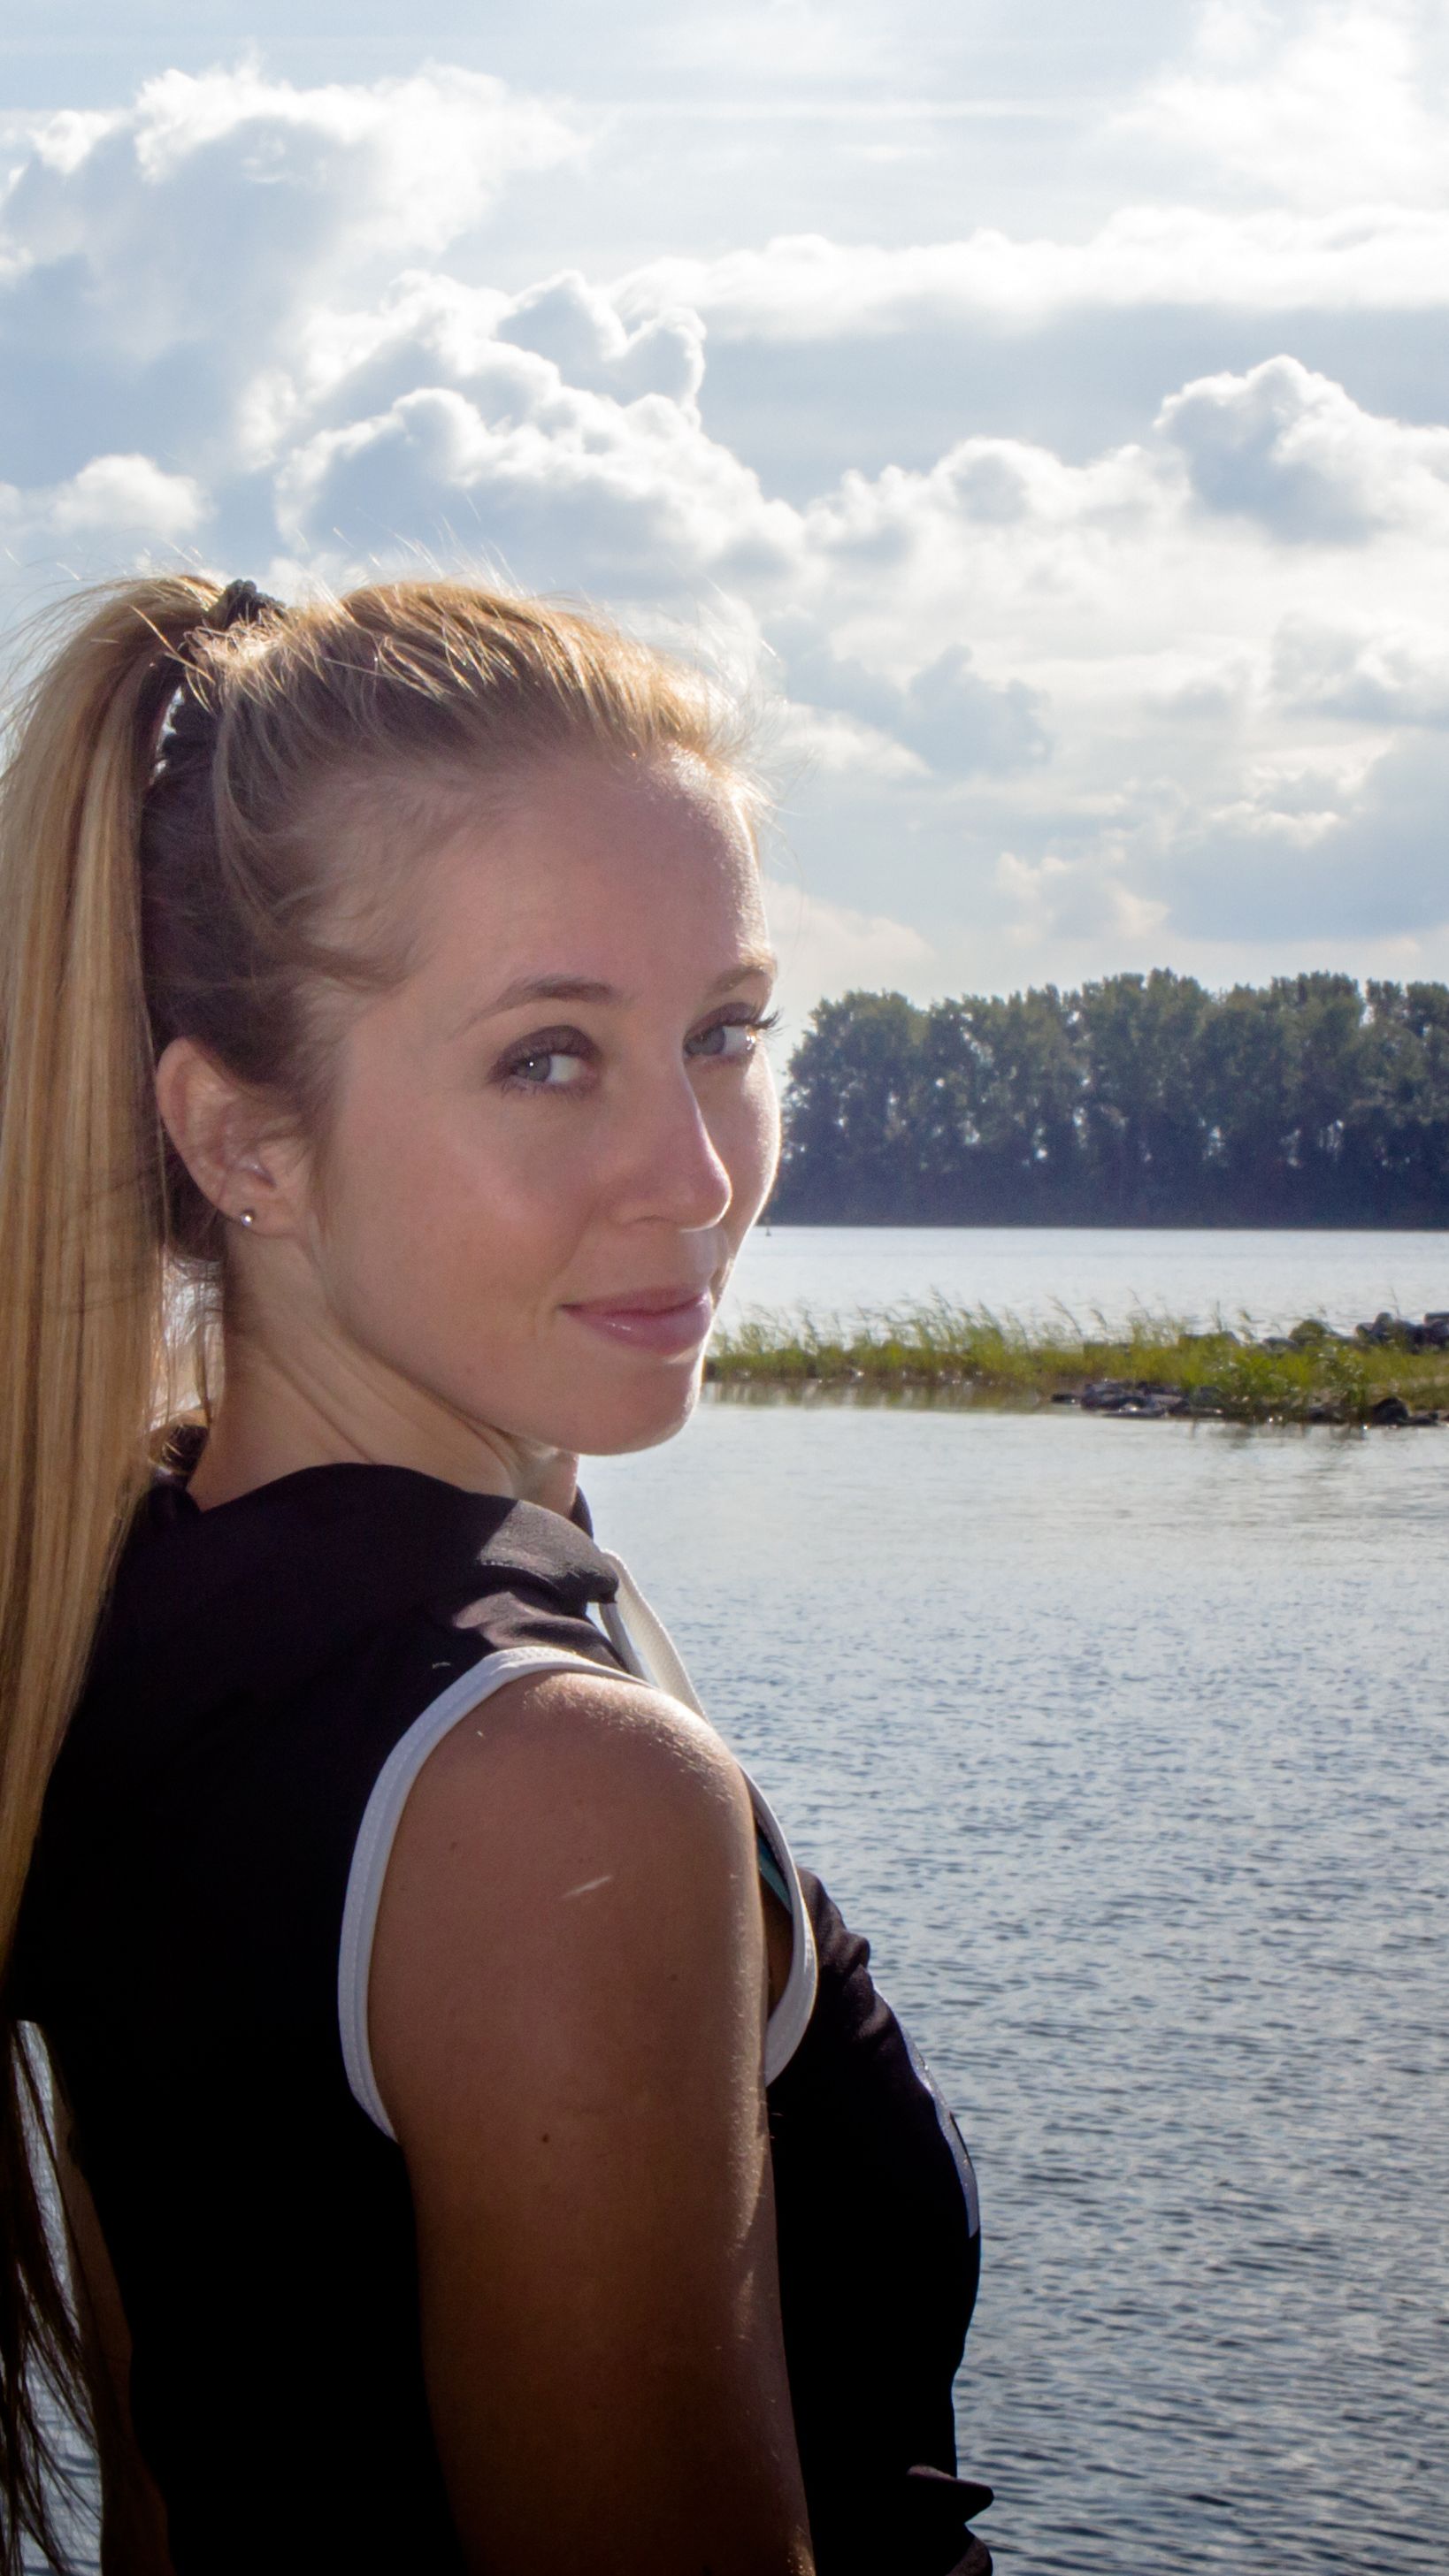 Blonde Teen Outdoor - Porn actress career switch helped gymnast Verona van de Leur get her life  back on track | CNN